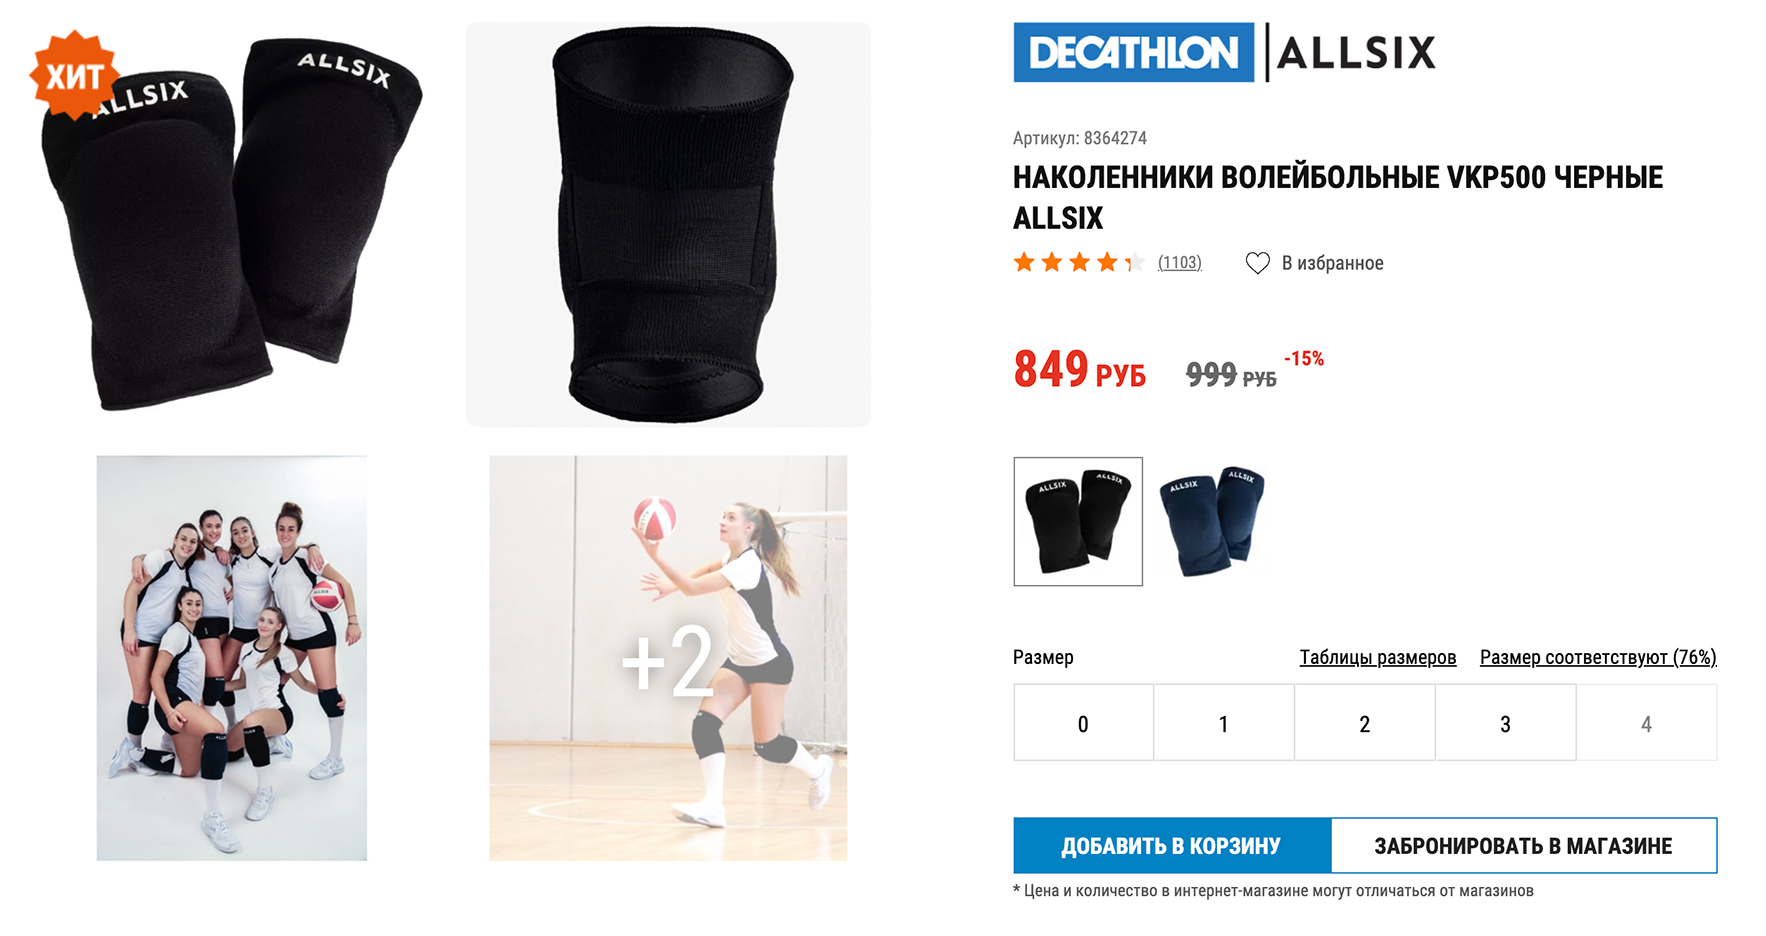 Это базовые наколенники для классического волейбола. Источник: decathlon.ru